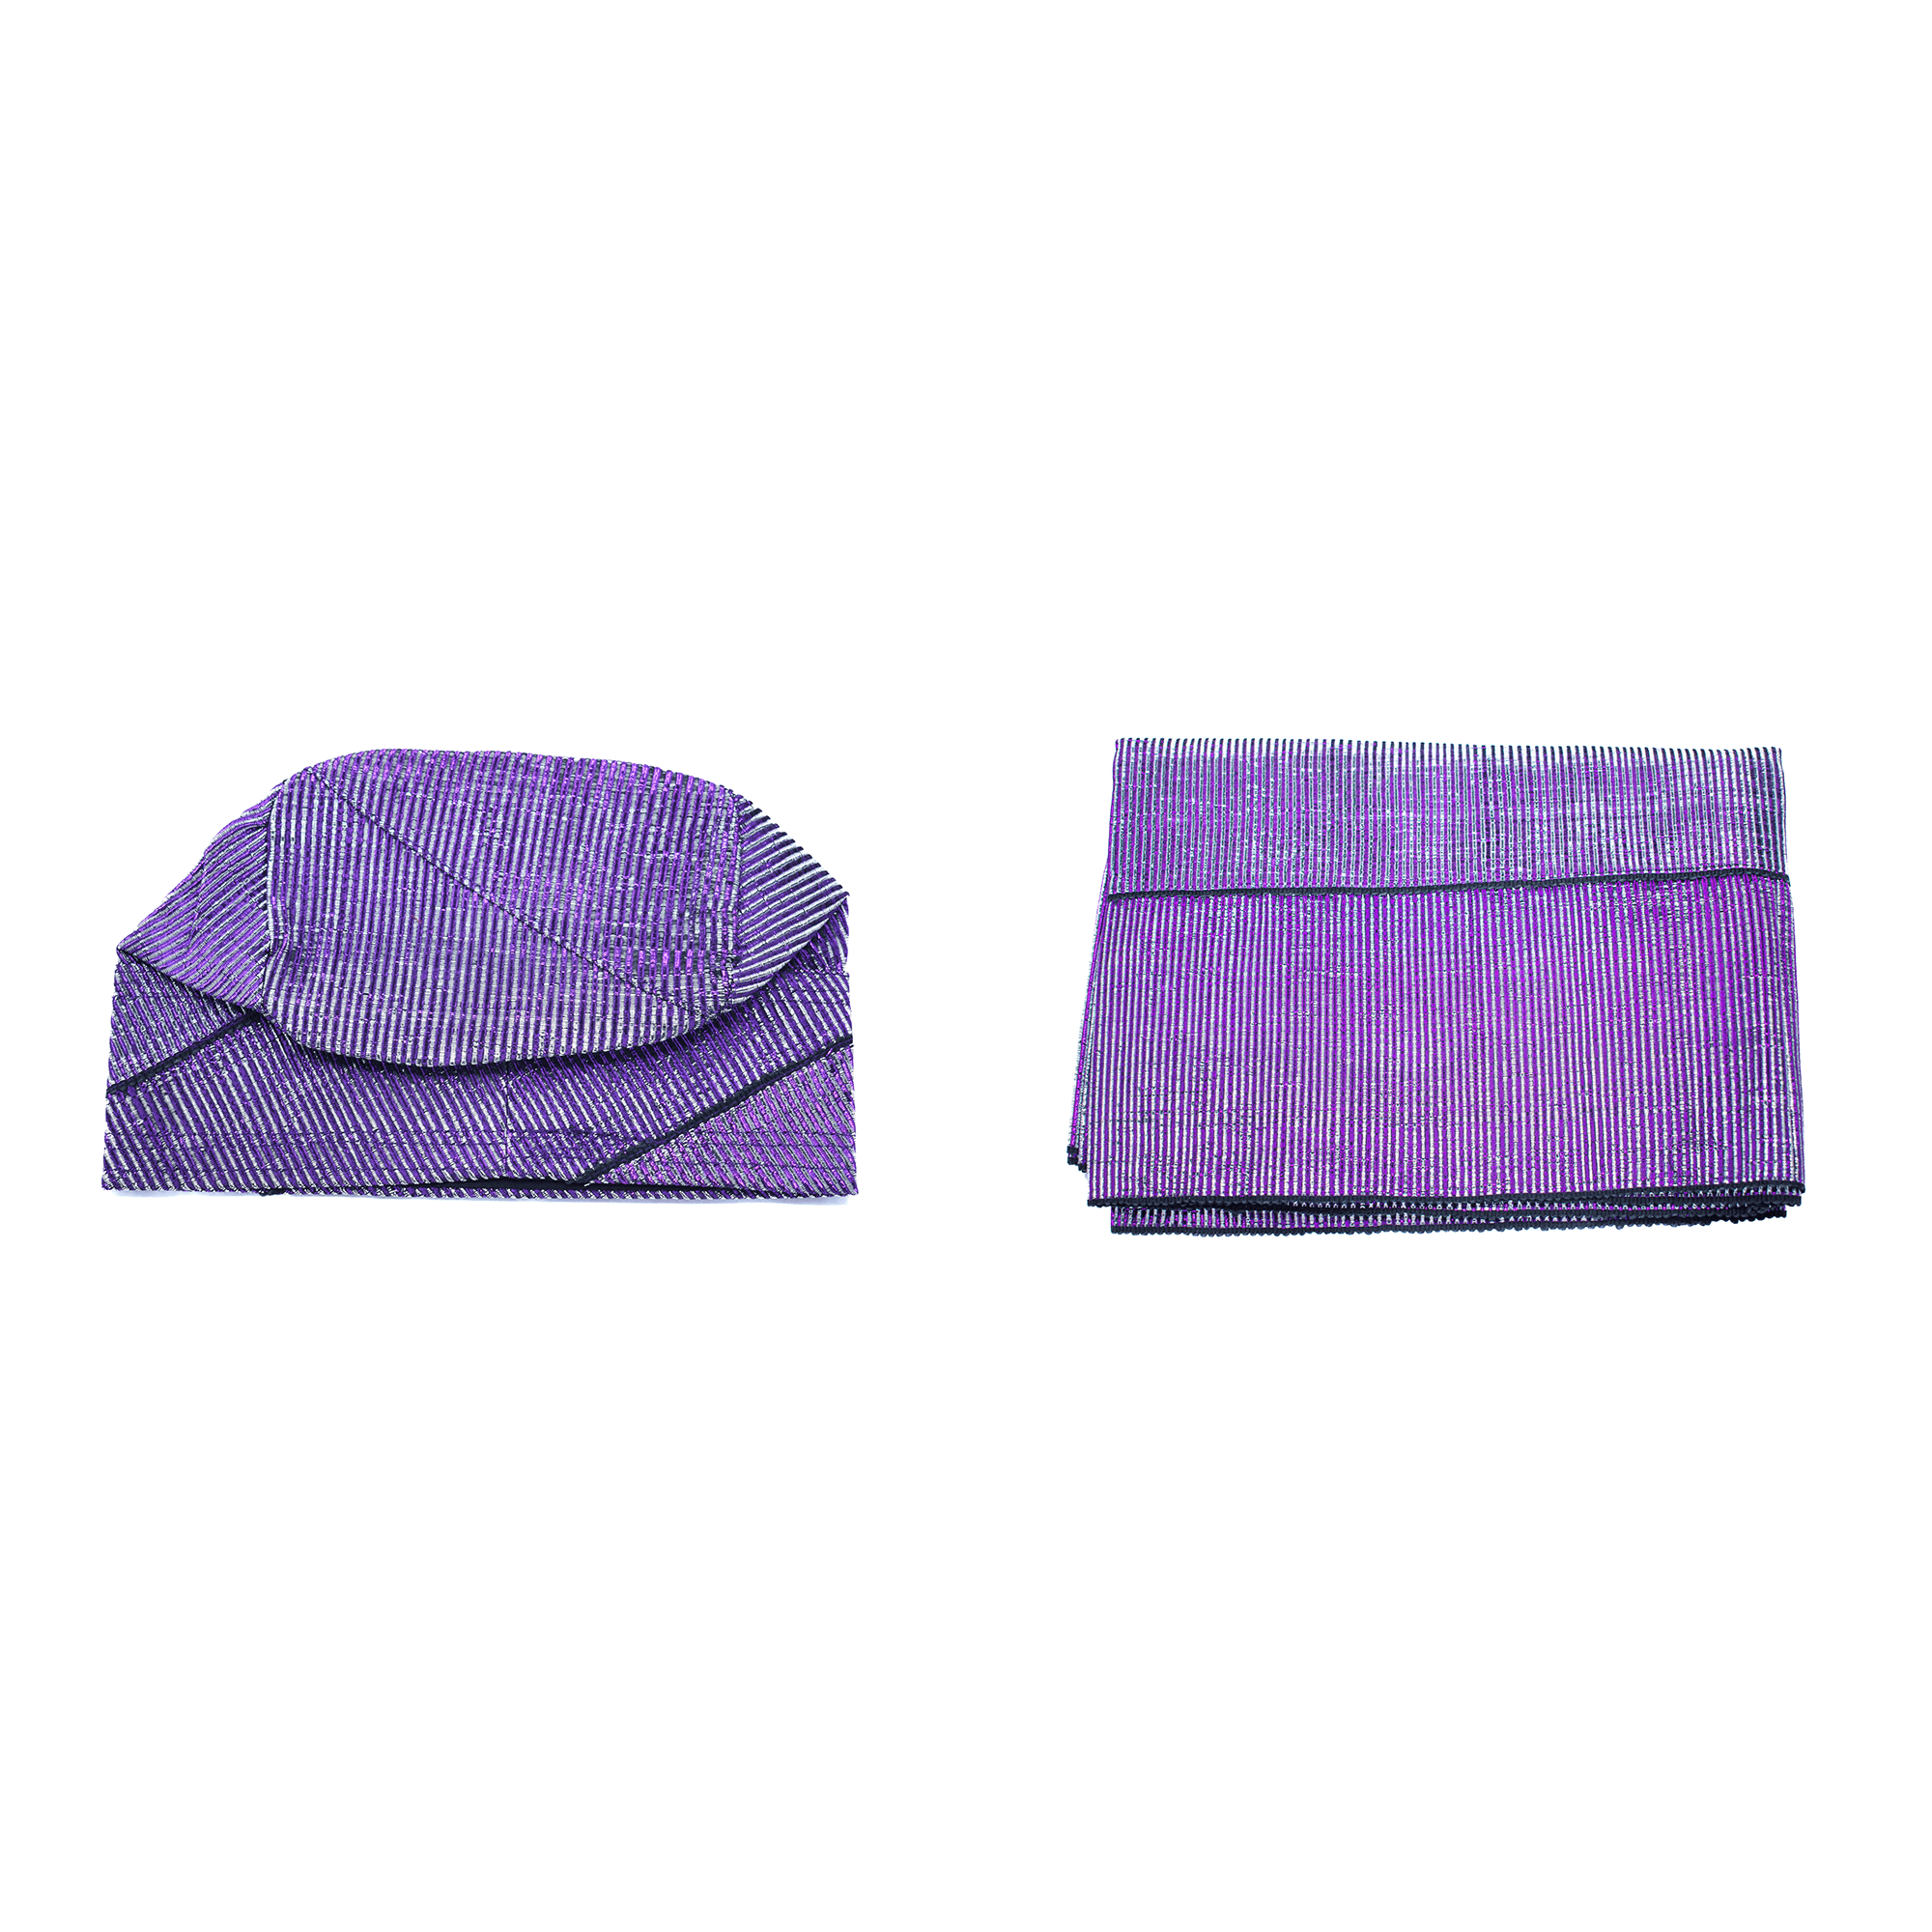 Purple Aso-Oke Cap